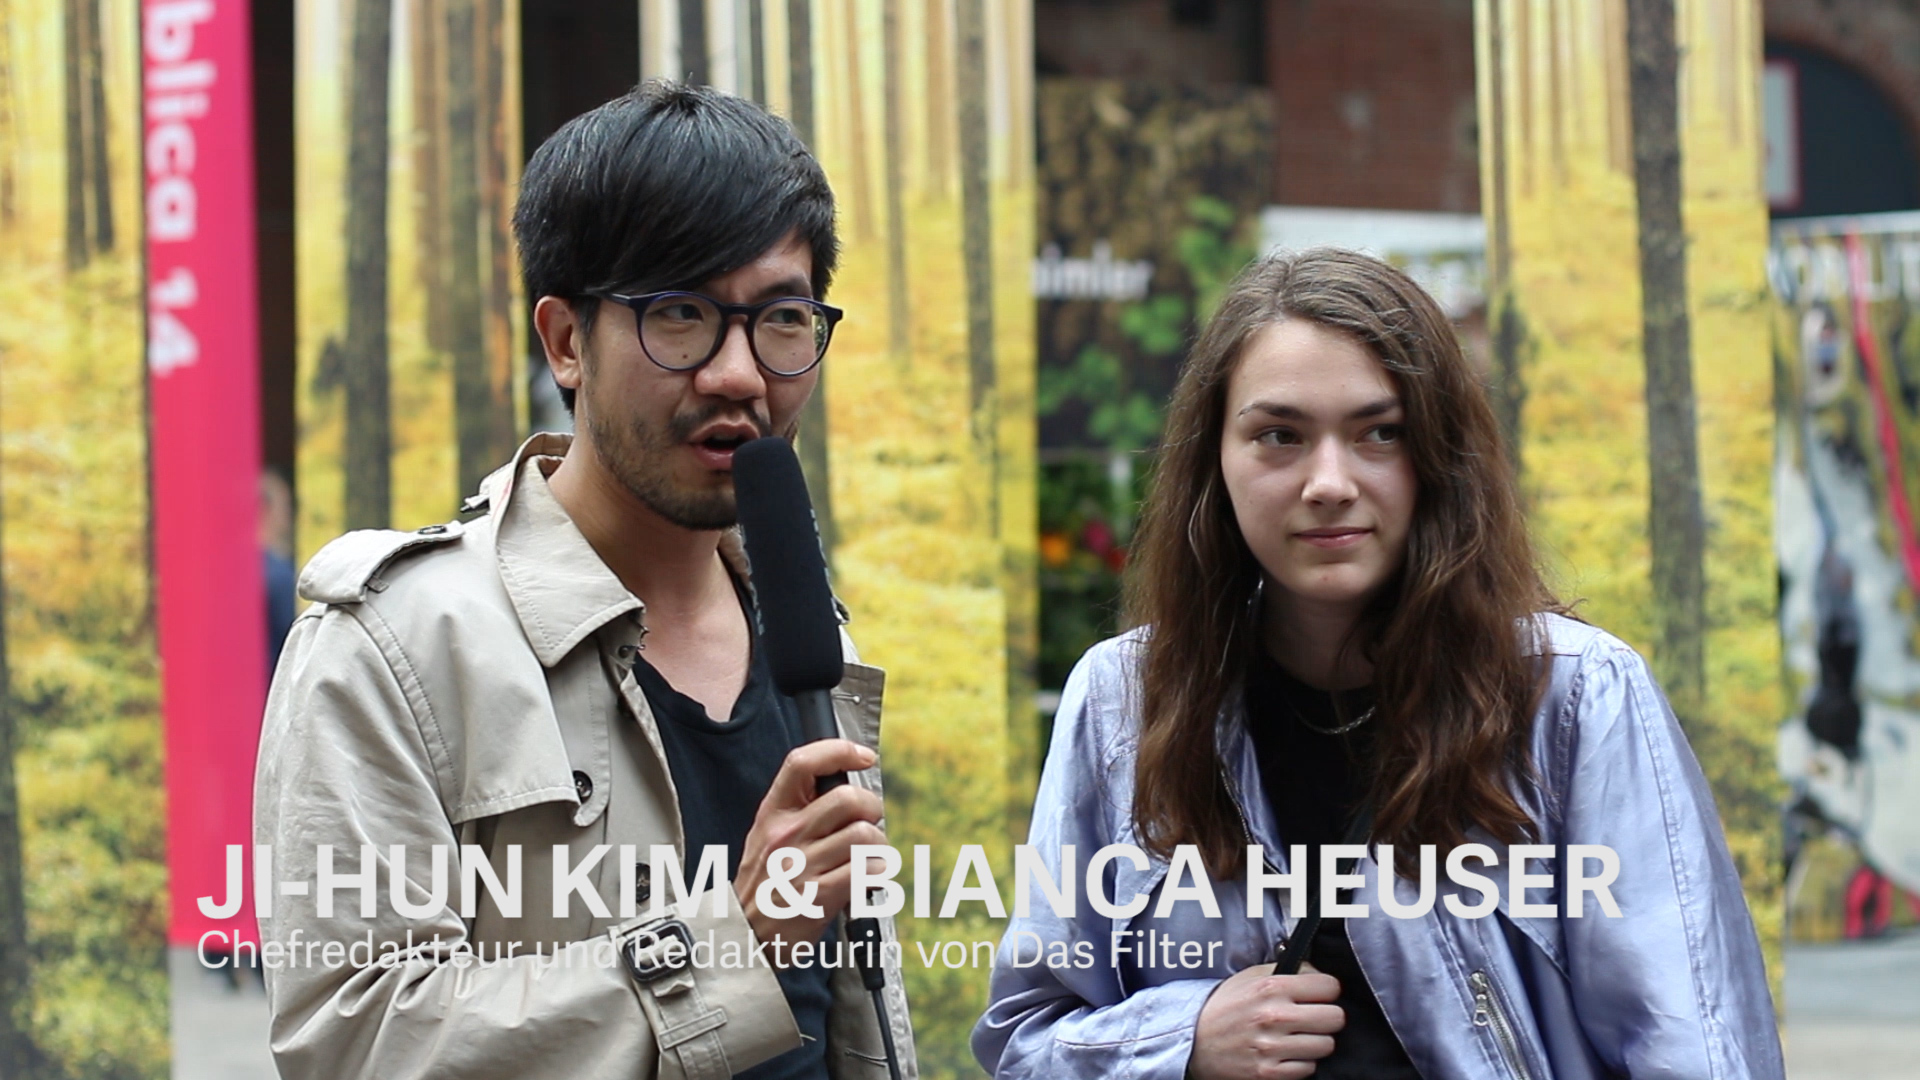 Ji-Hun Kim & Bianca Heuser, Chefredakteur und Redakteurin von Das Filter